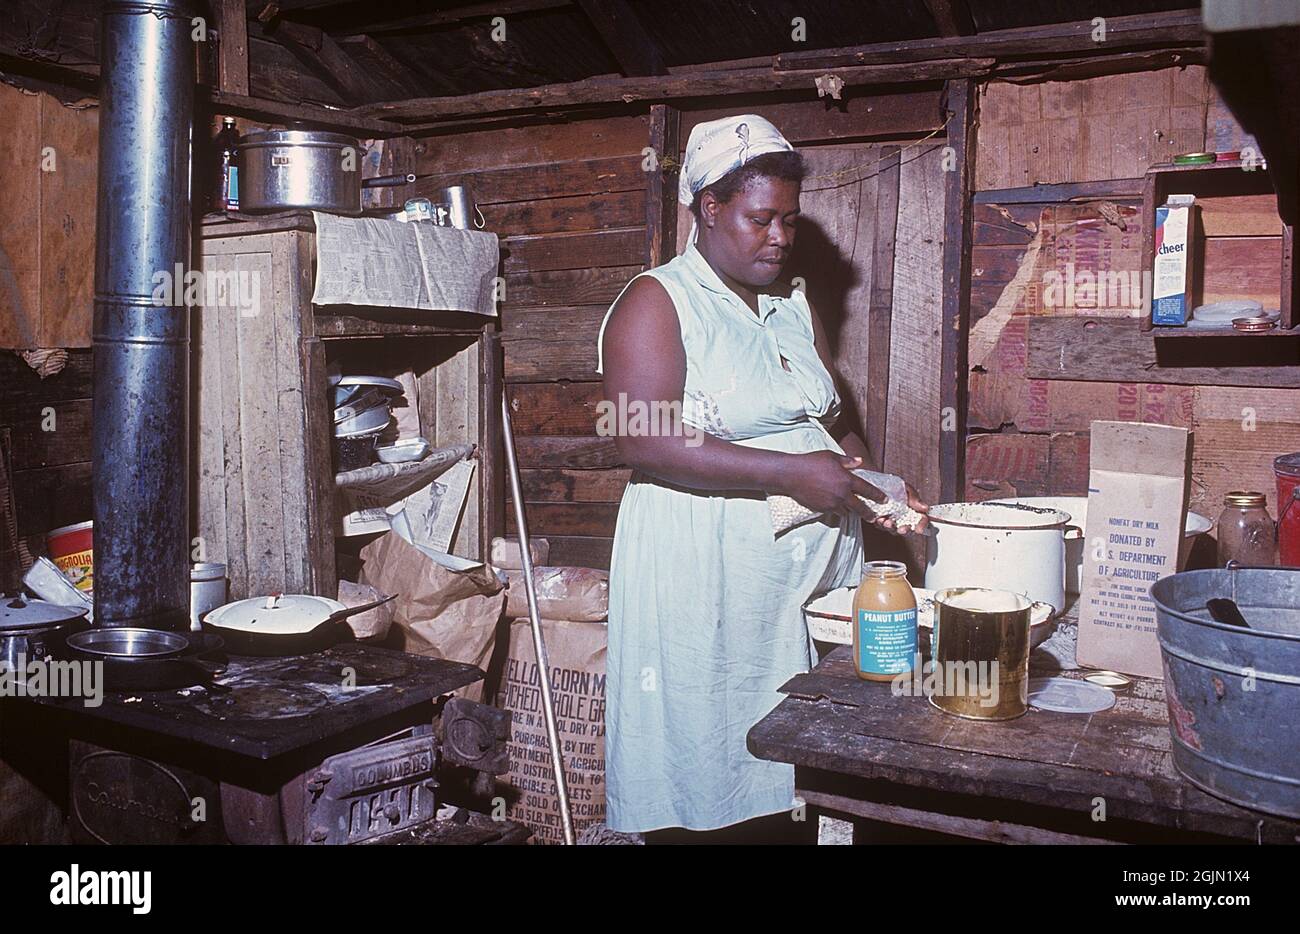 USA Georgia 1967. Una donna afroamericana nella sua casa in Georgia che prepara un pasto. Raffigurato in cucina con una stufa a sinistra. Un pacchetto di latte secco non grasso donato da noi departmen dell'agricoltura è visibile, che era una consegna ai poveri. Ambiente visibilmente povero. Kodachrome vetrino originale. Credit Roland Palm Ref 6-5-2 Foto Stock